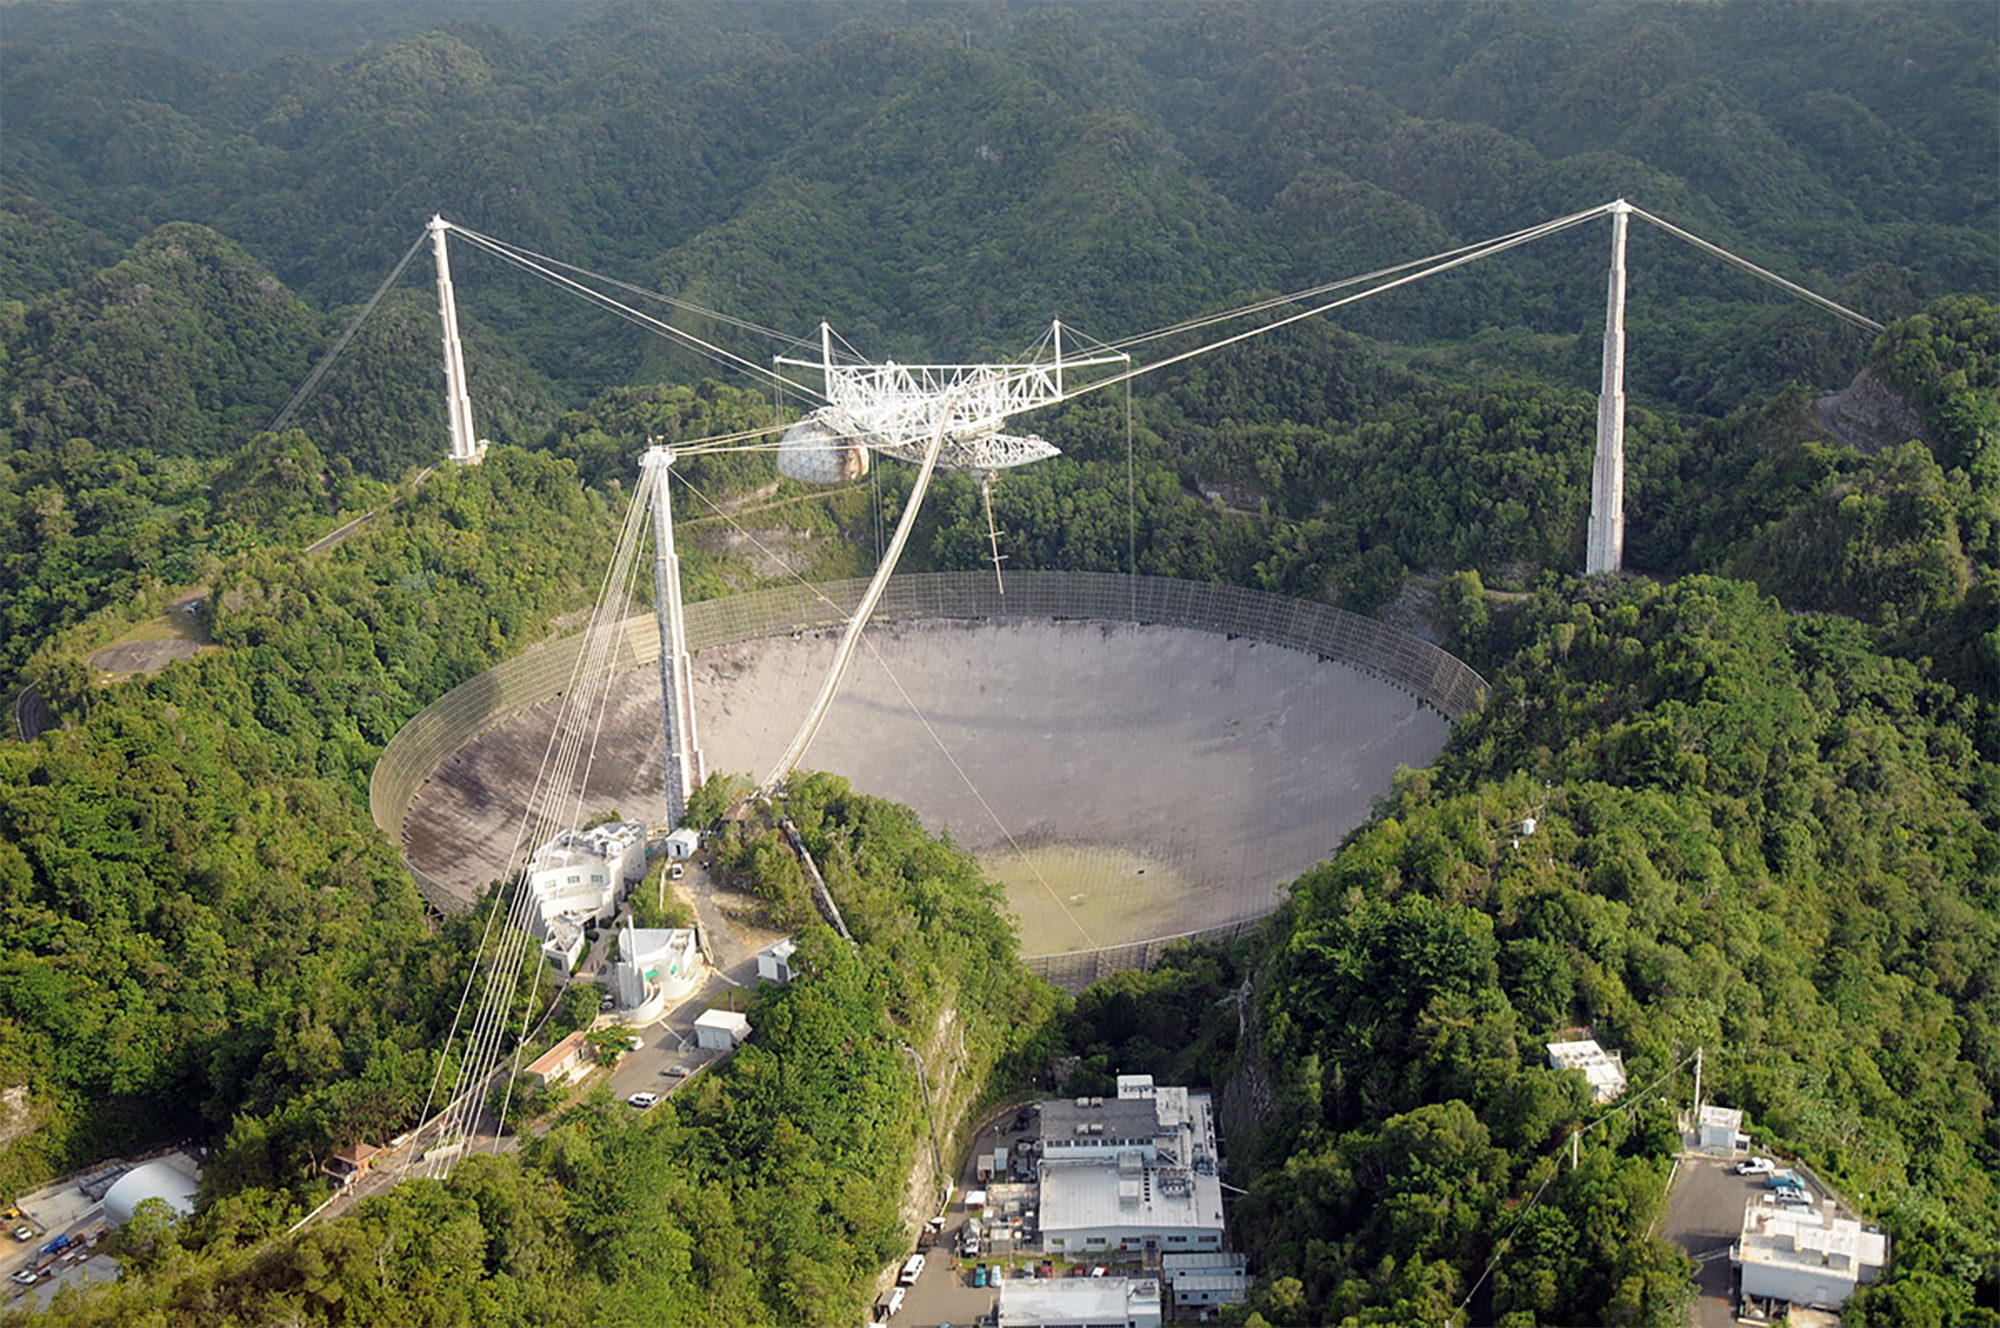 Le radiotélescope Arecibo, situé à Porto Rico, quand il était opérationnel. Il s'est effondré le 1er décembre 2020. © National Science Foundation